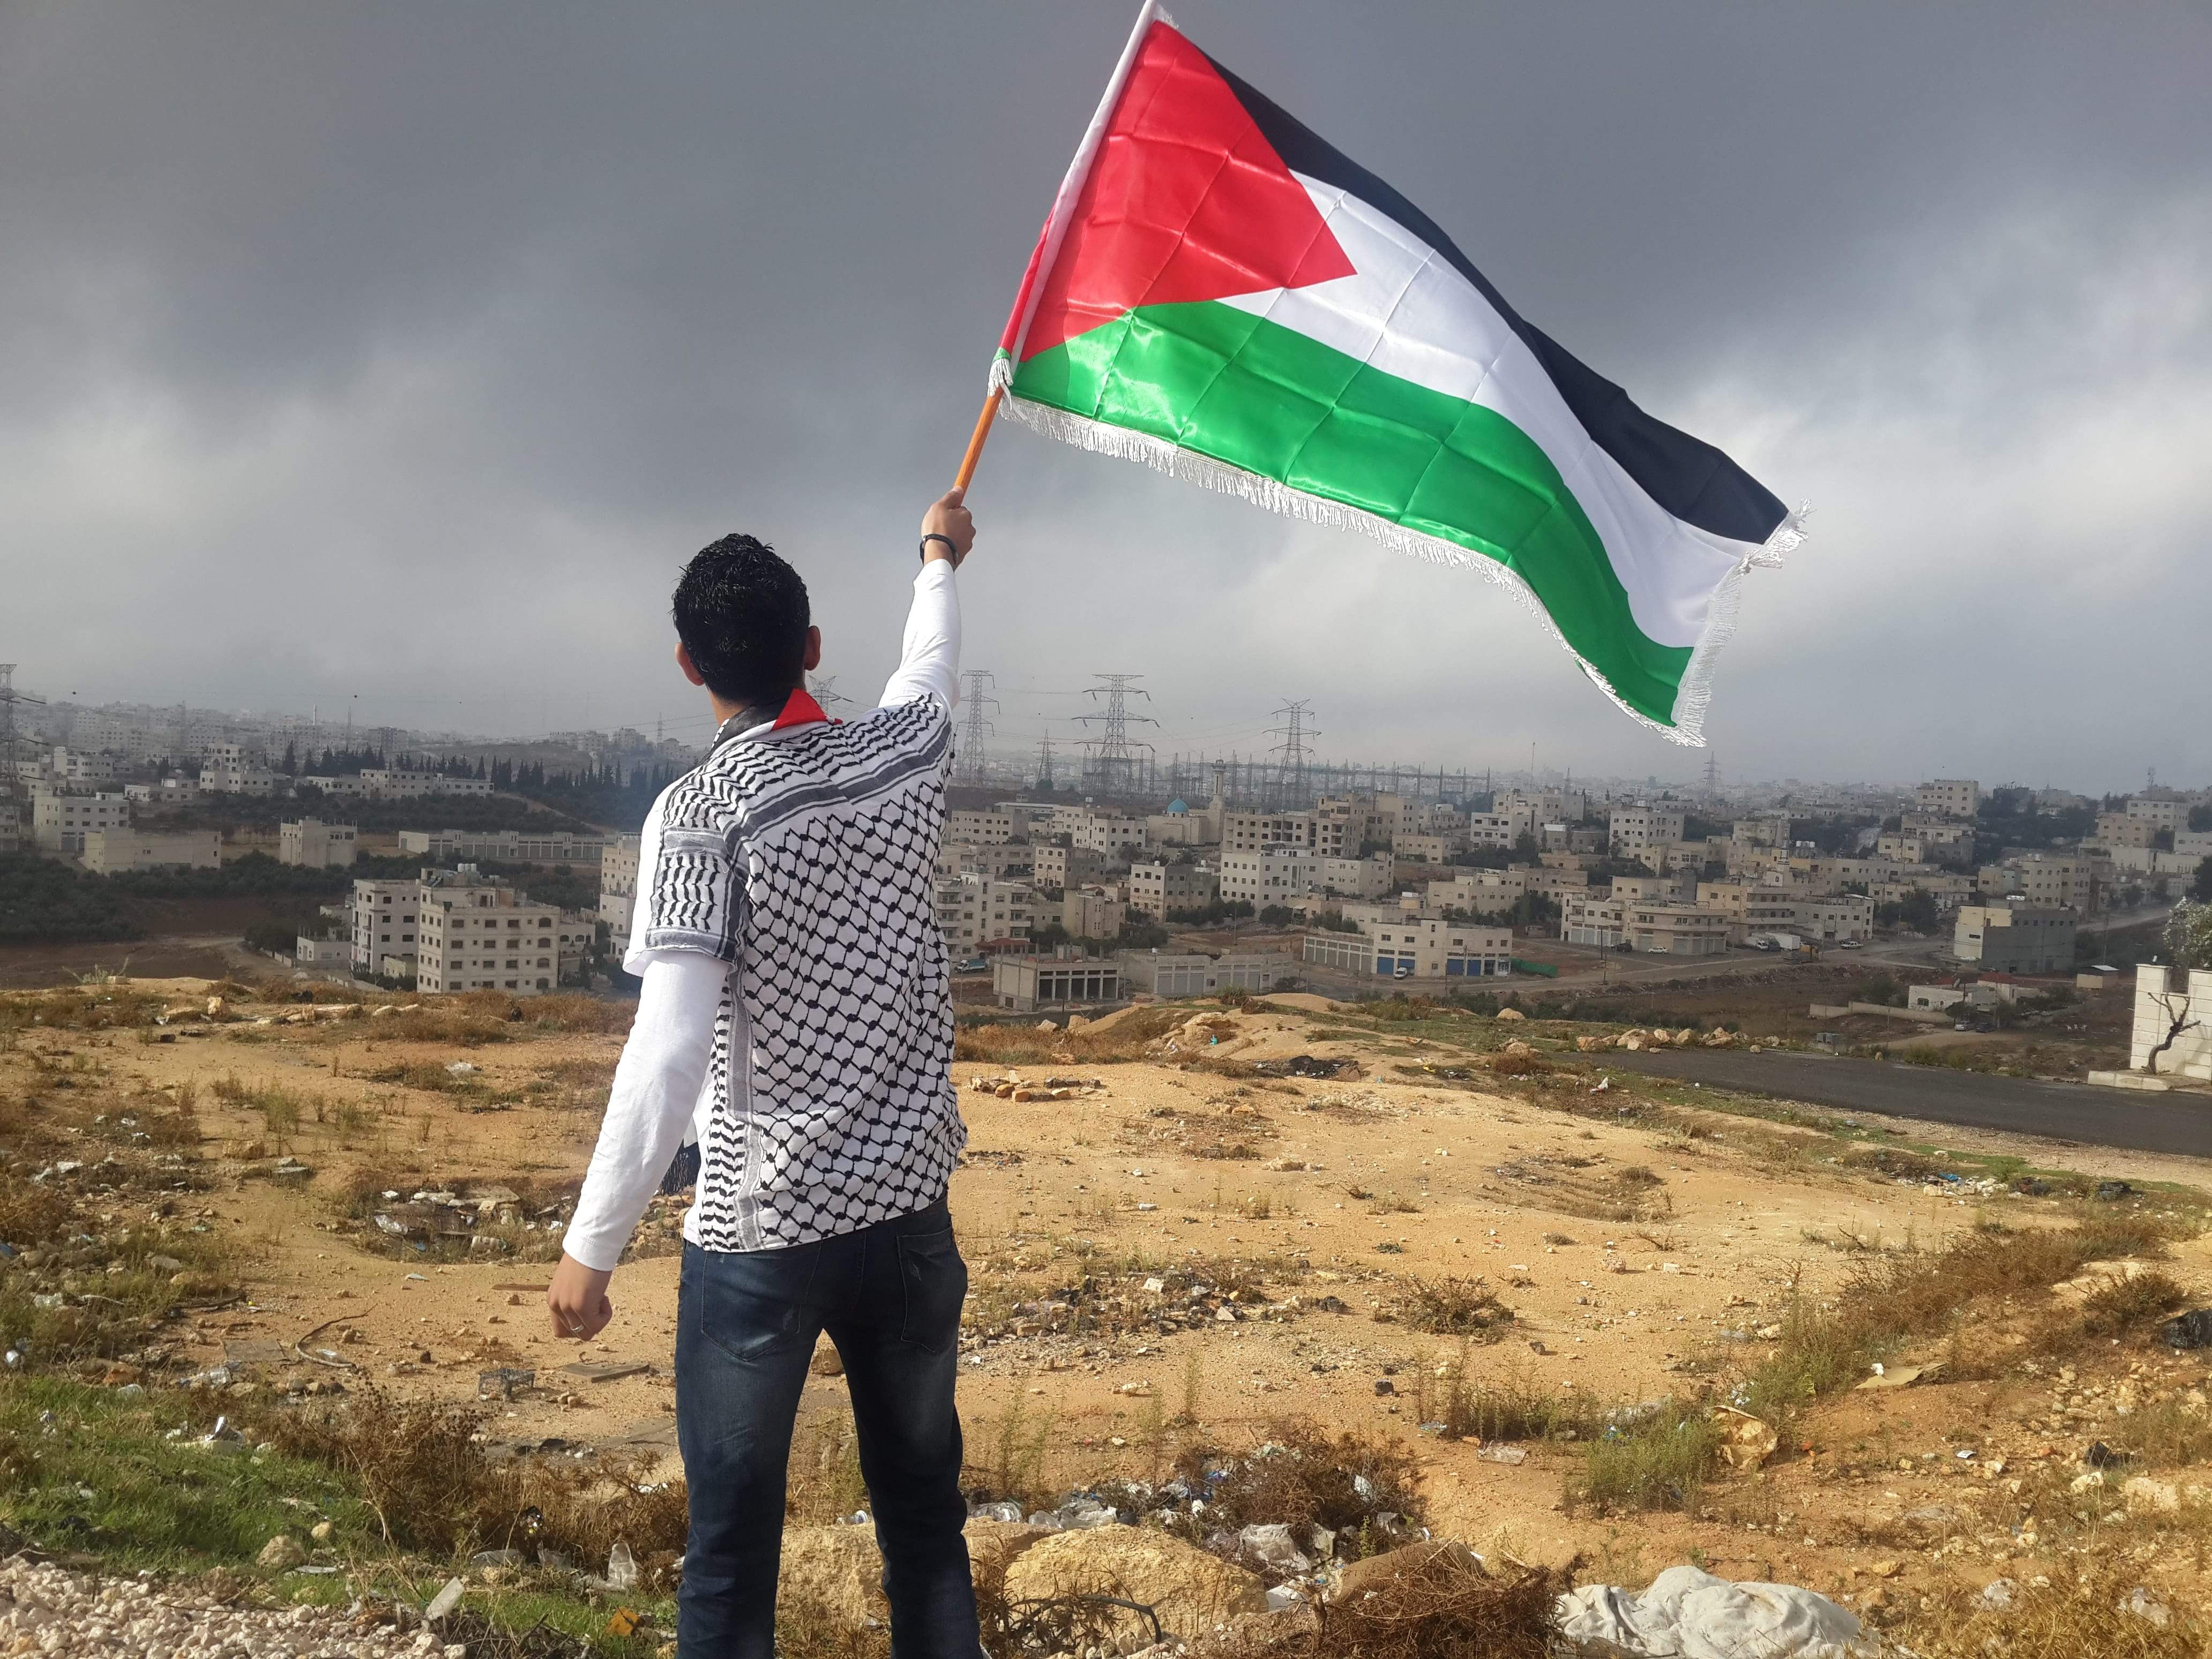 Ways to support Palestine, News